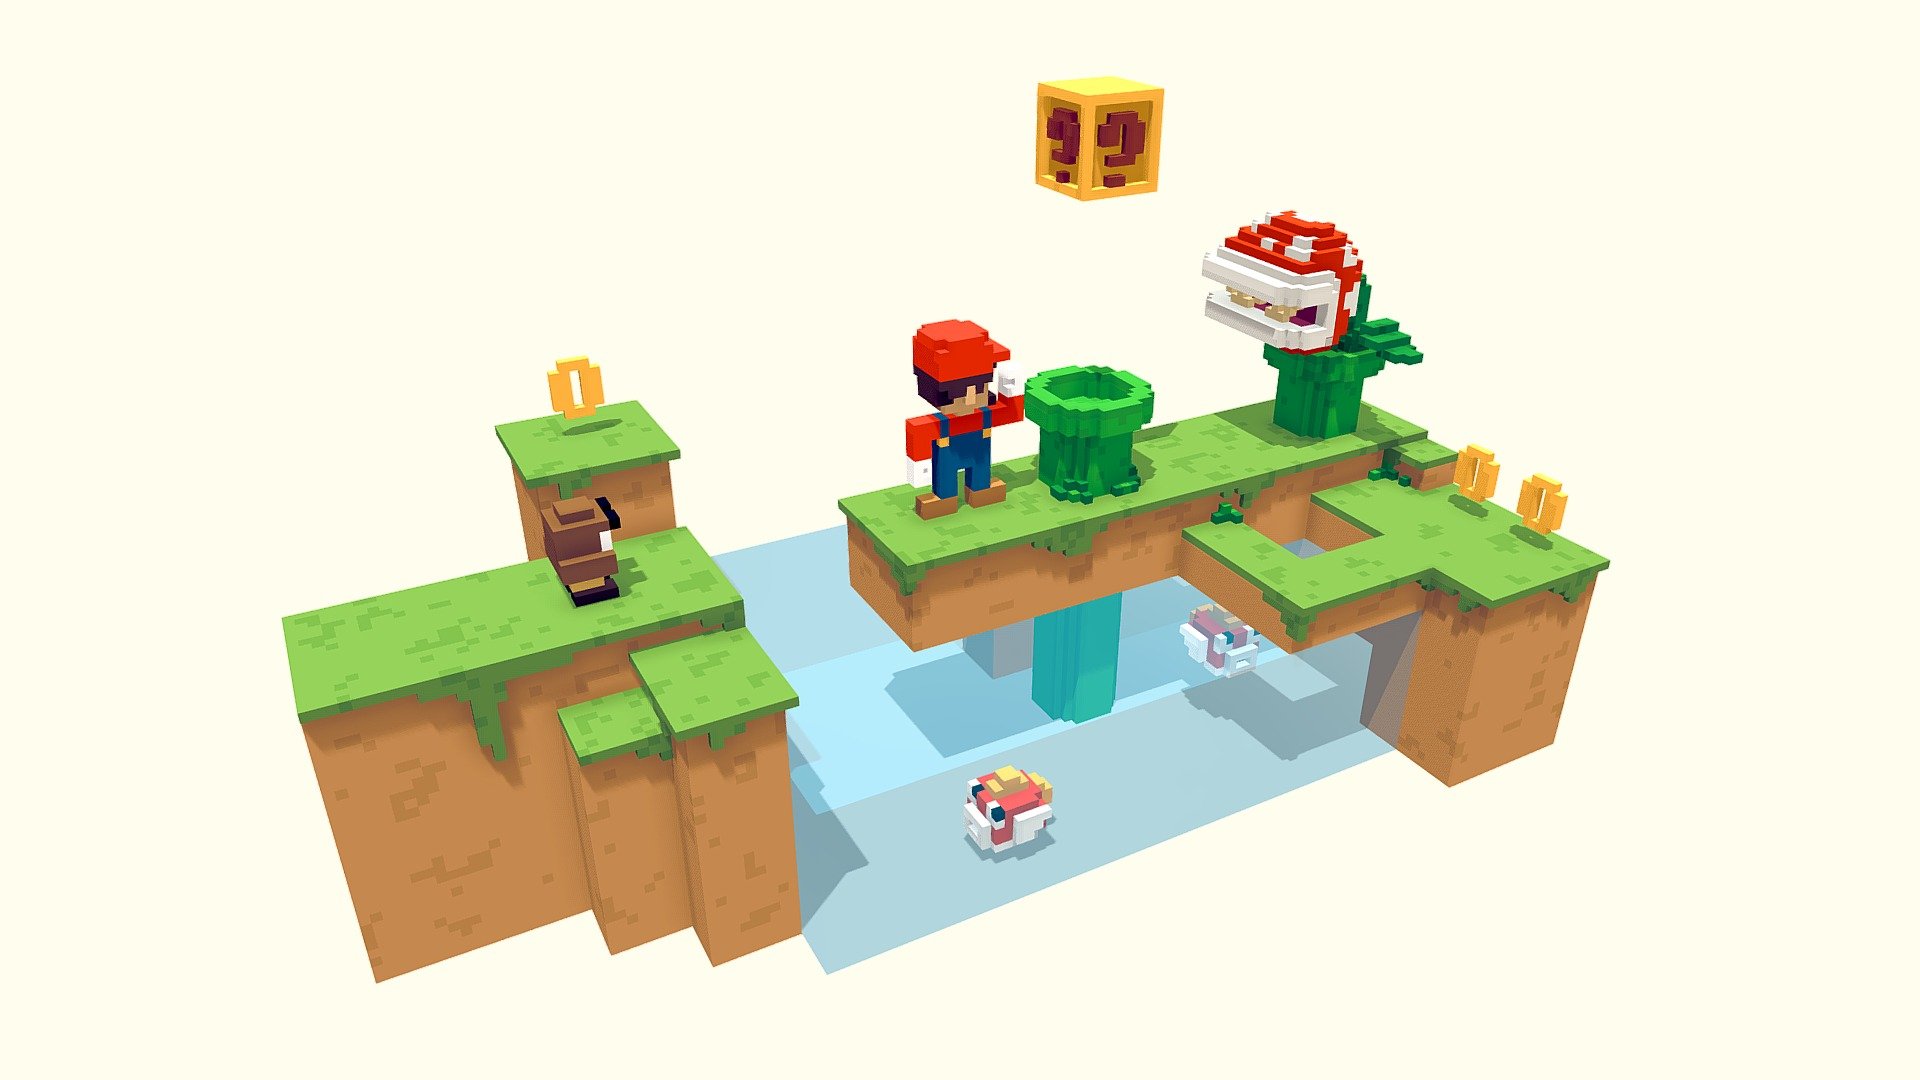 Nintendo-inspired Mario Bros Scene - Mario Bros + Magicavoxel File - Buy Royalty Free 3D model by William Santacruz (@williamsantacruz3d) 3d model